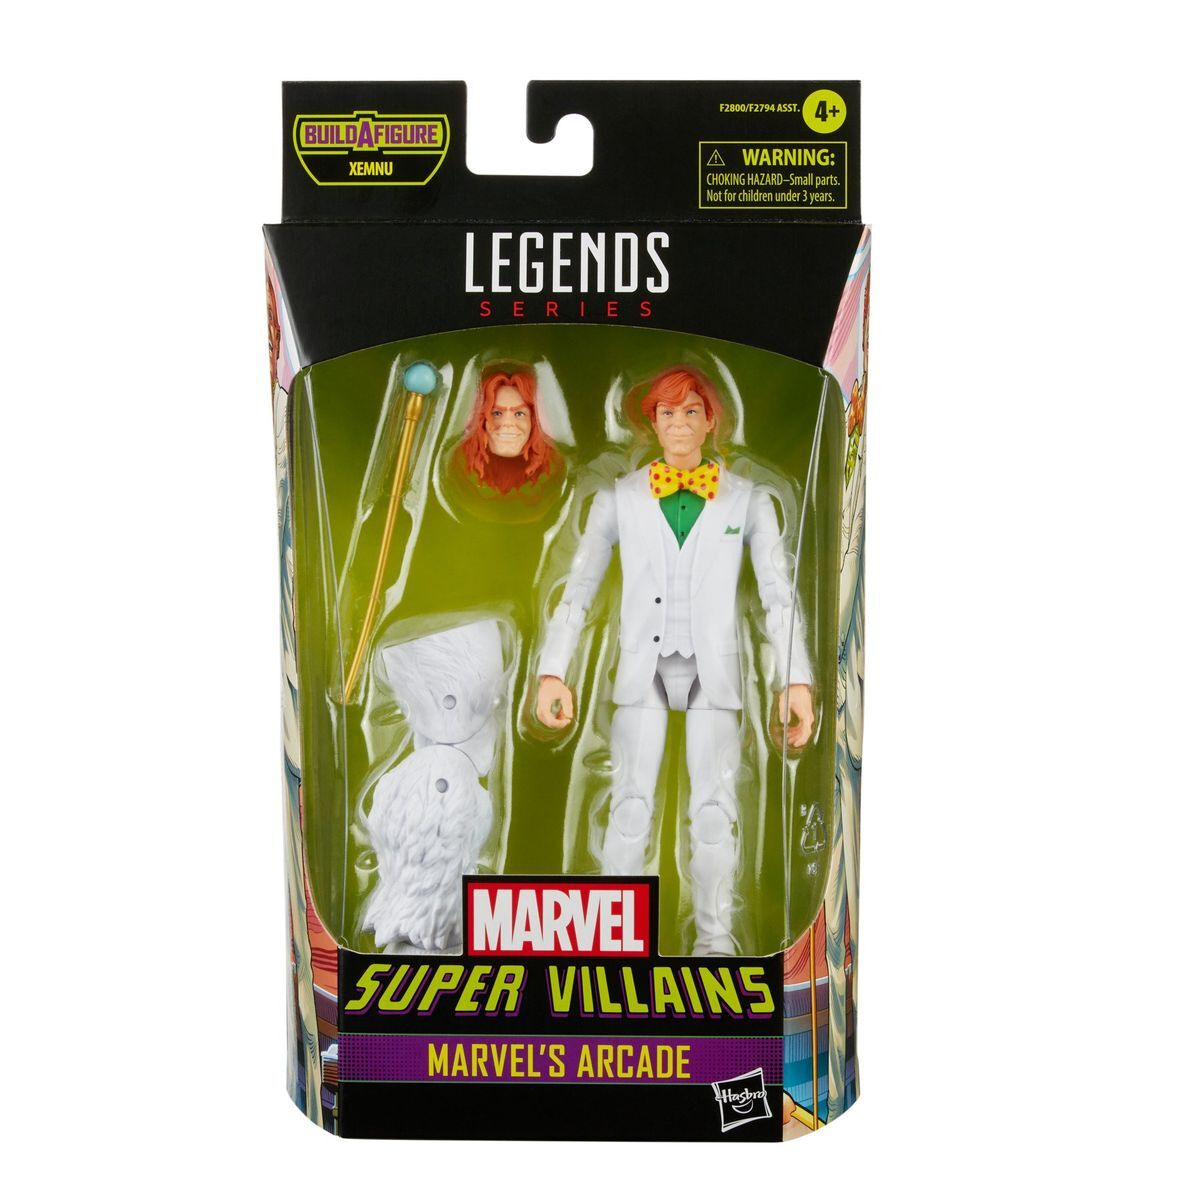 Marvel Legends Series Super Villains - Marvels Arcade